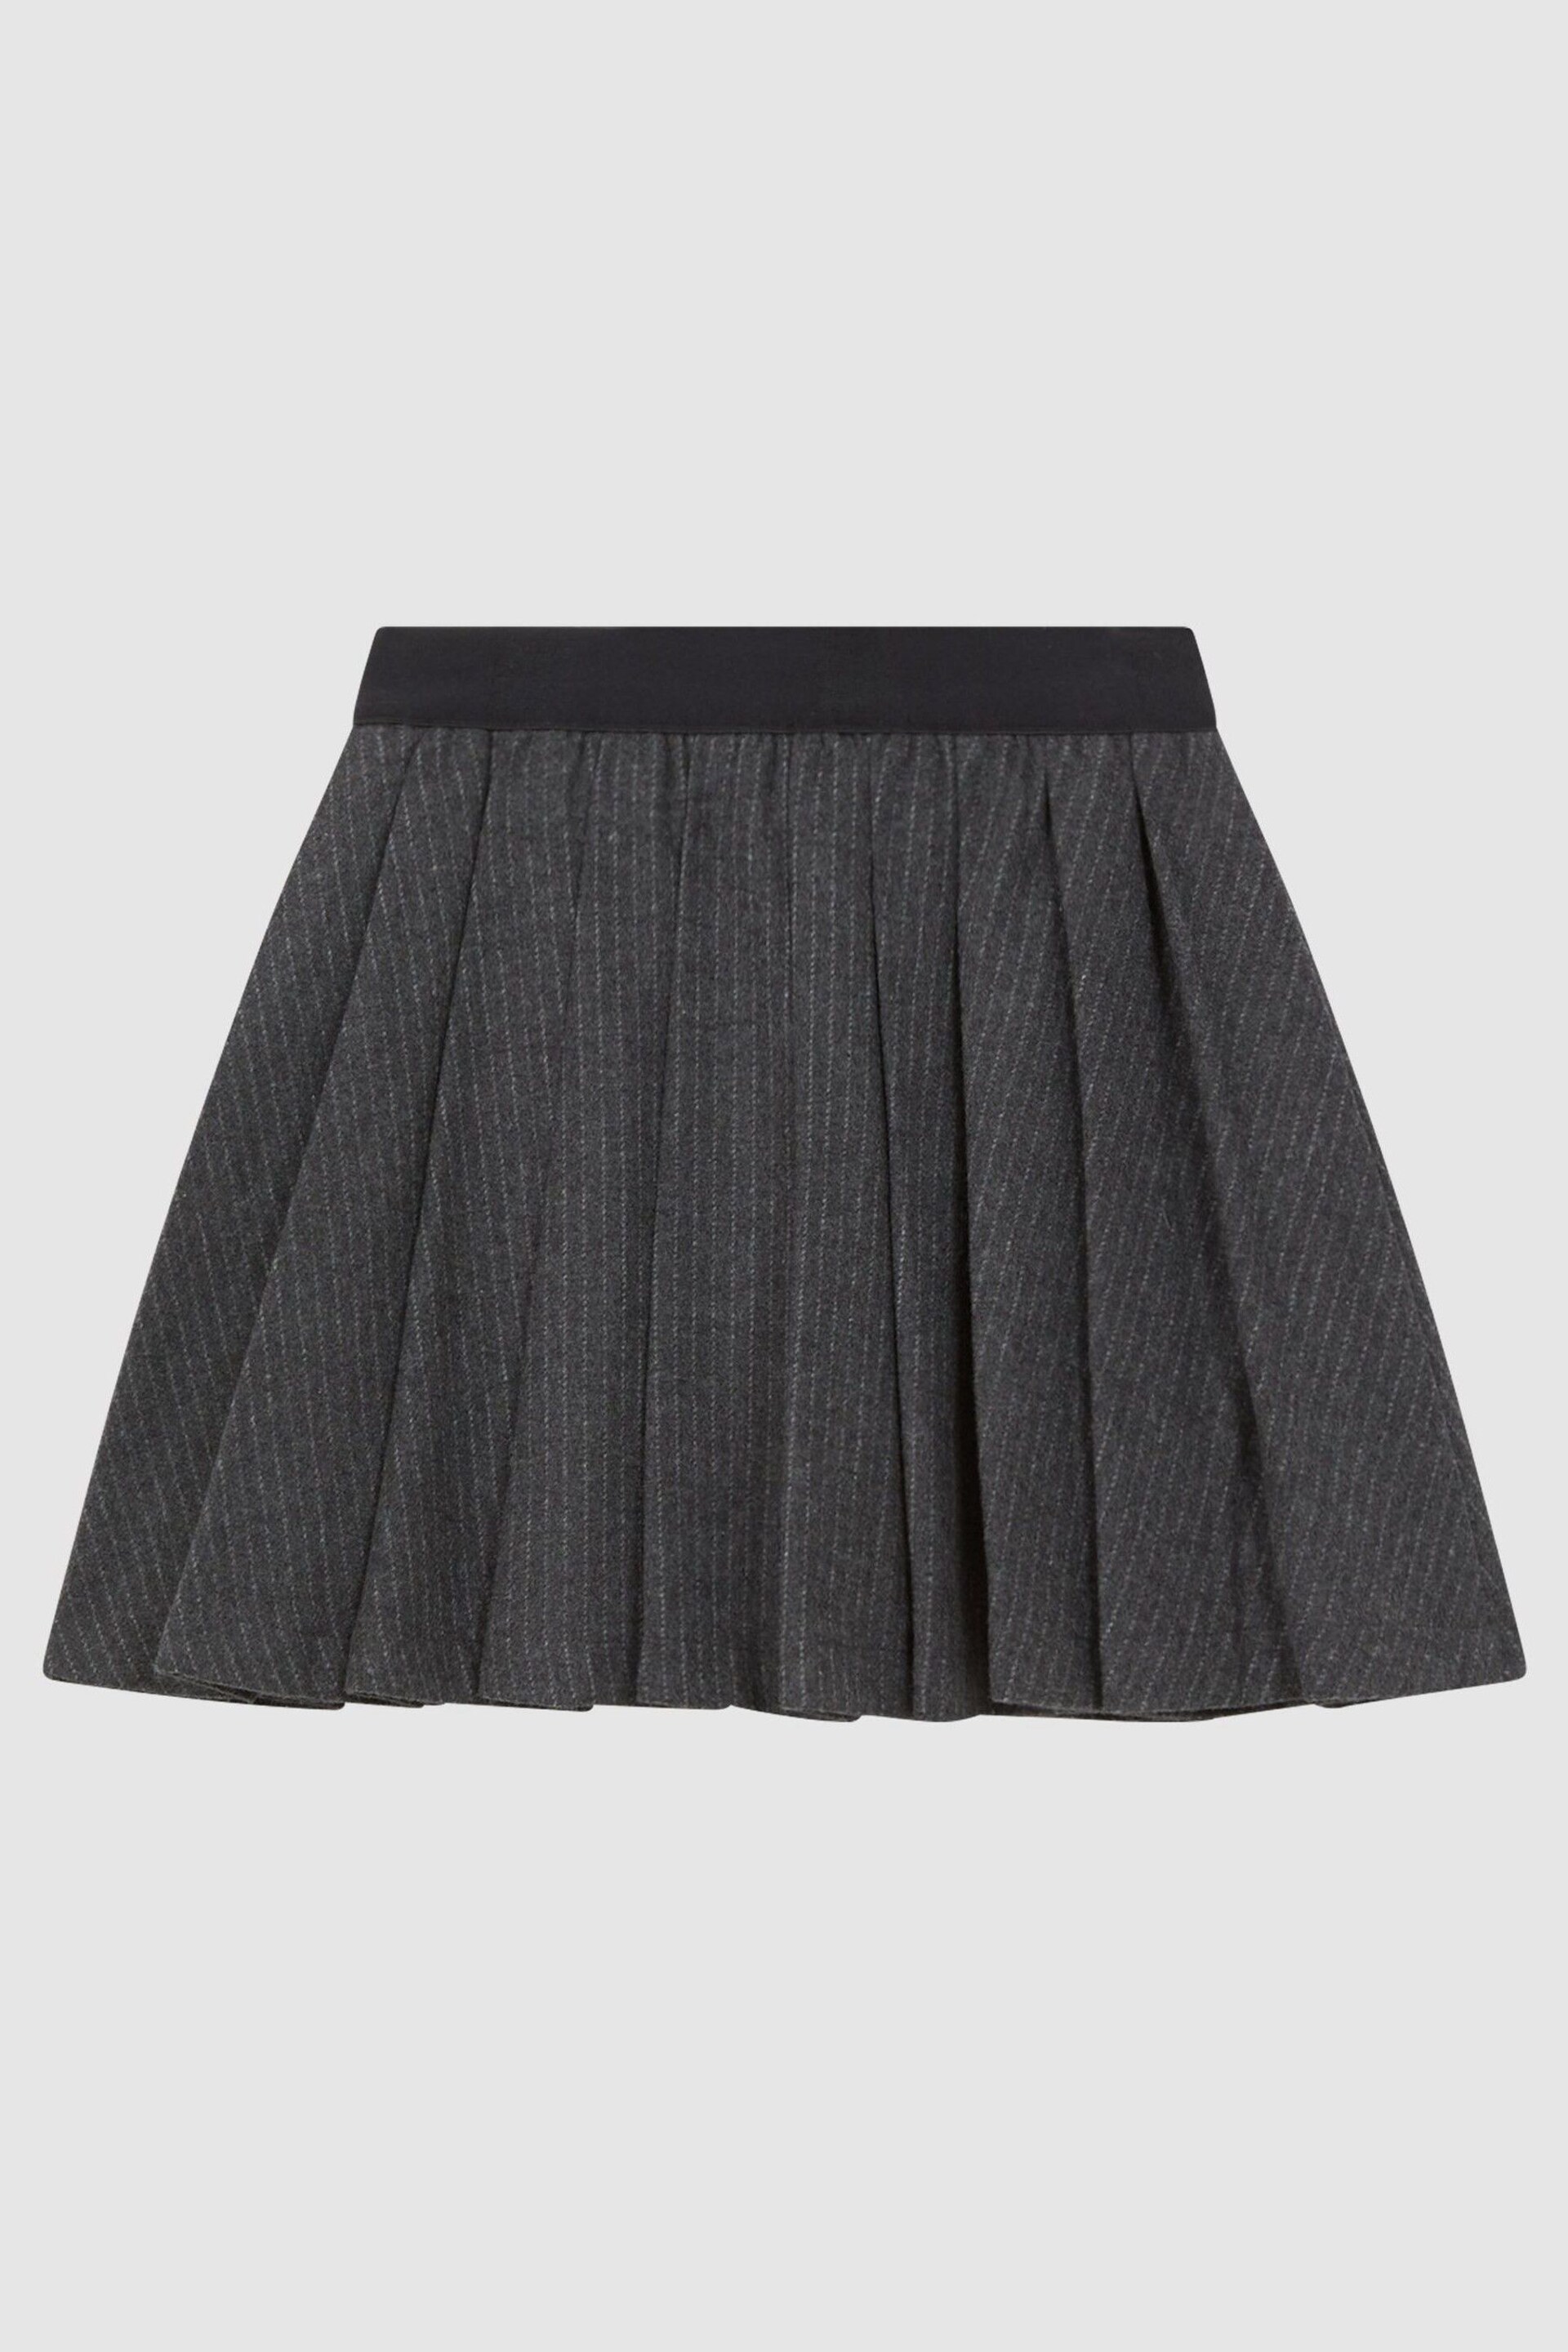 Reiss Dark Grey Marcie Junior Wool Blend Striped Pleated Skirt - Image 2 of 6